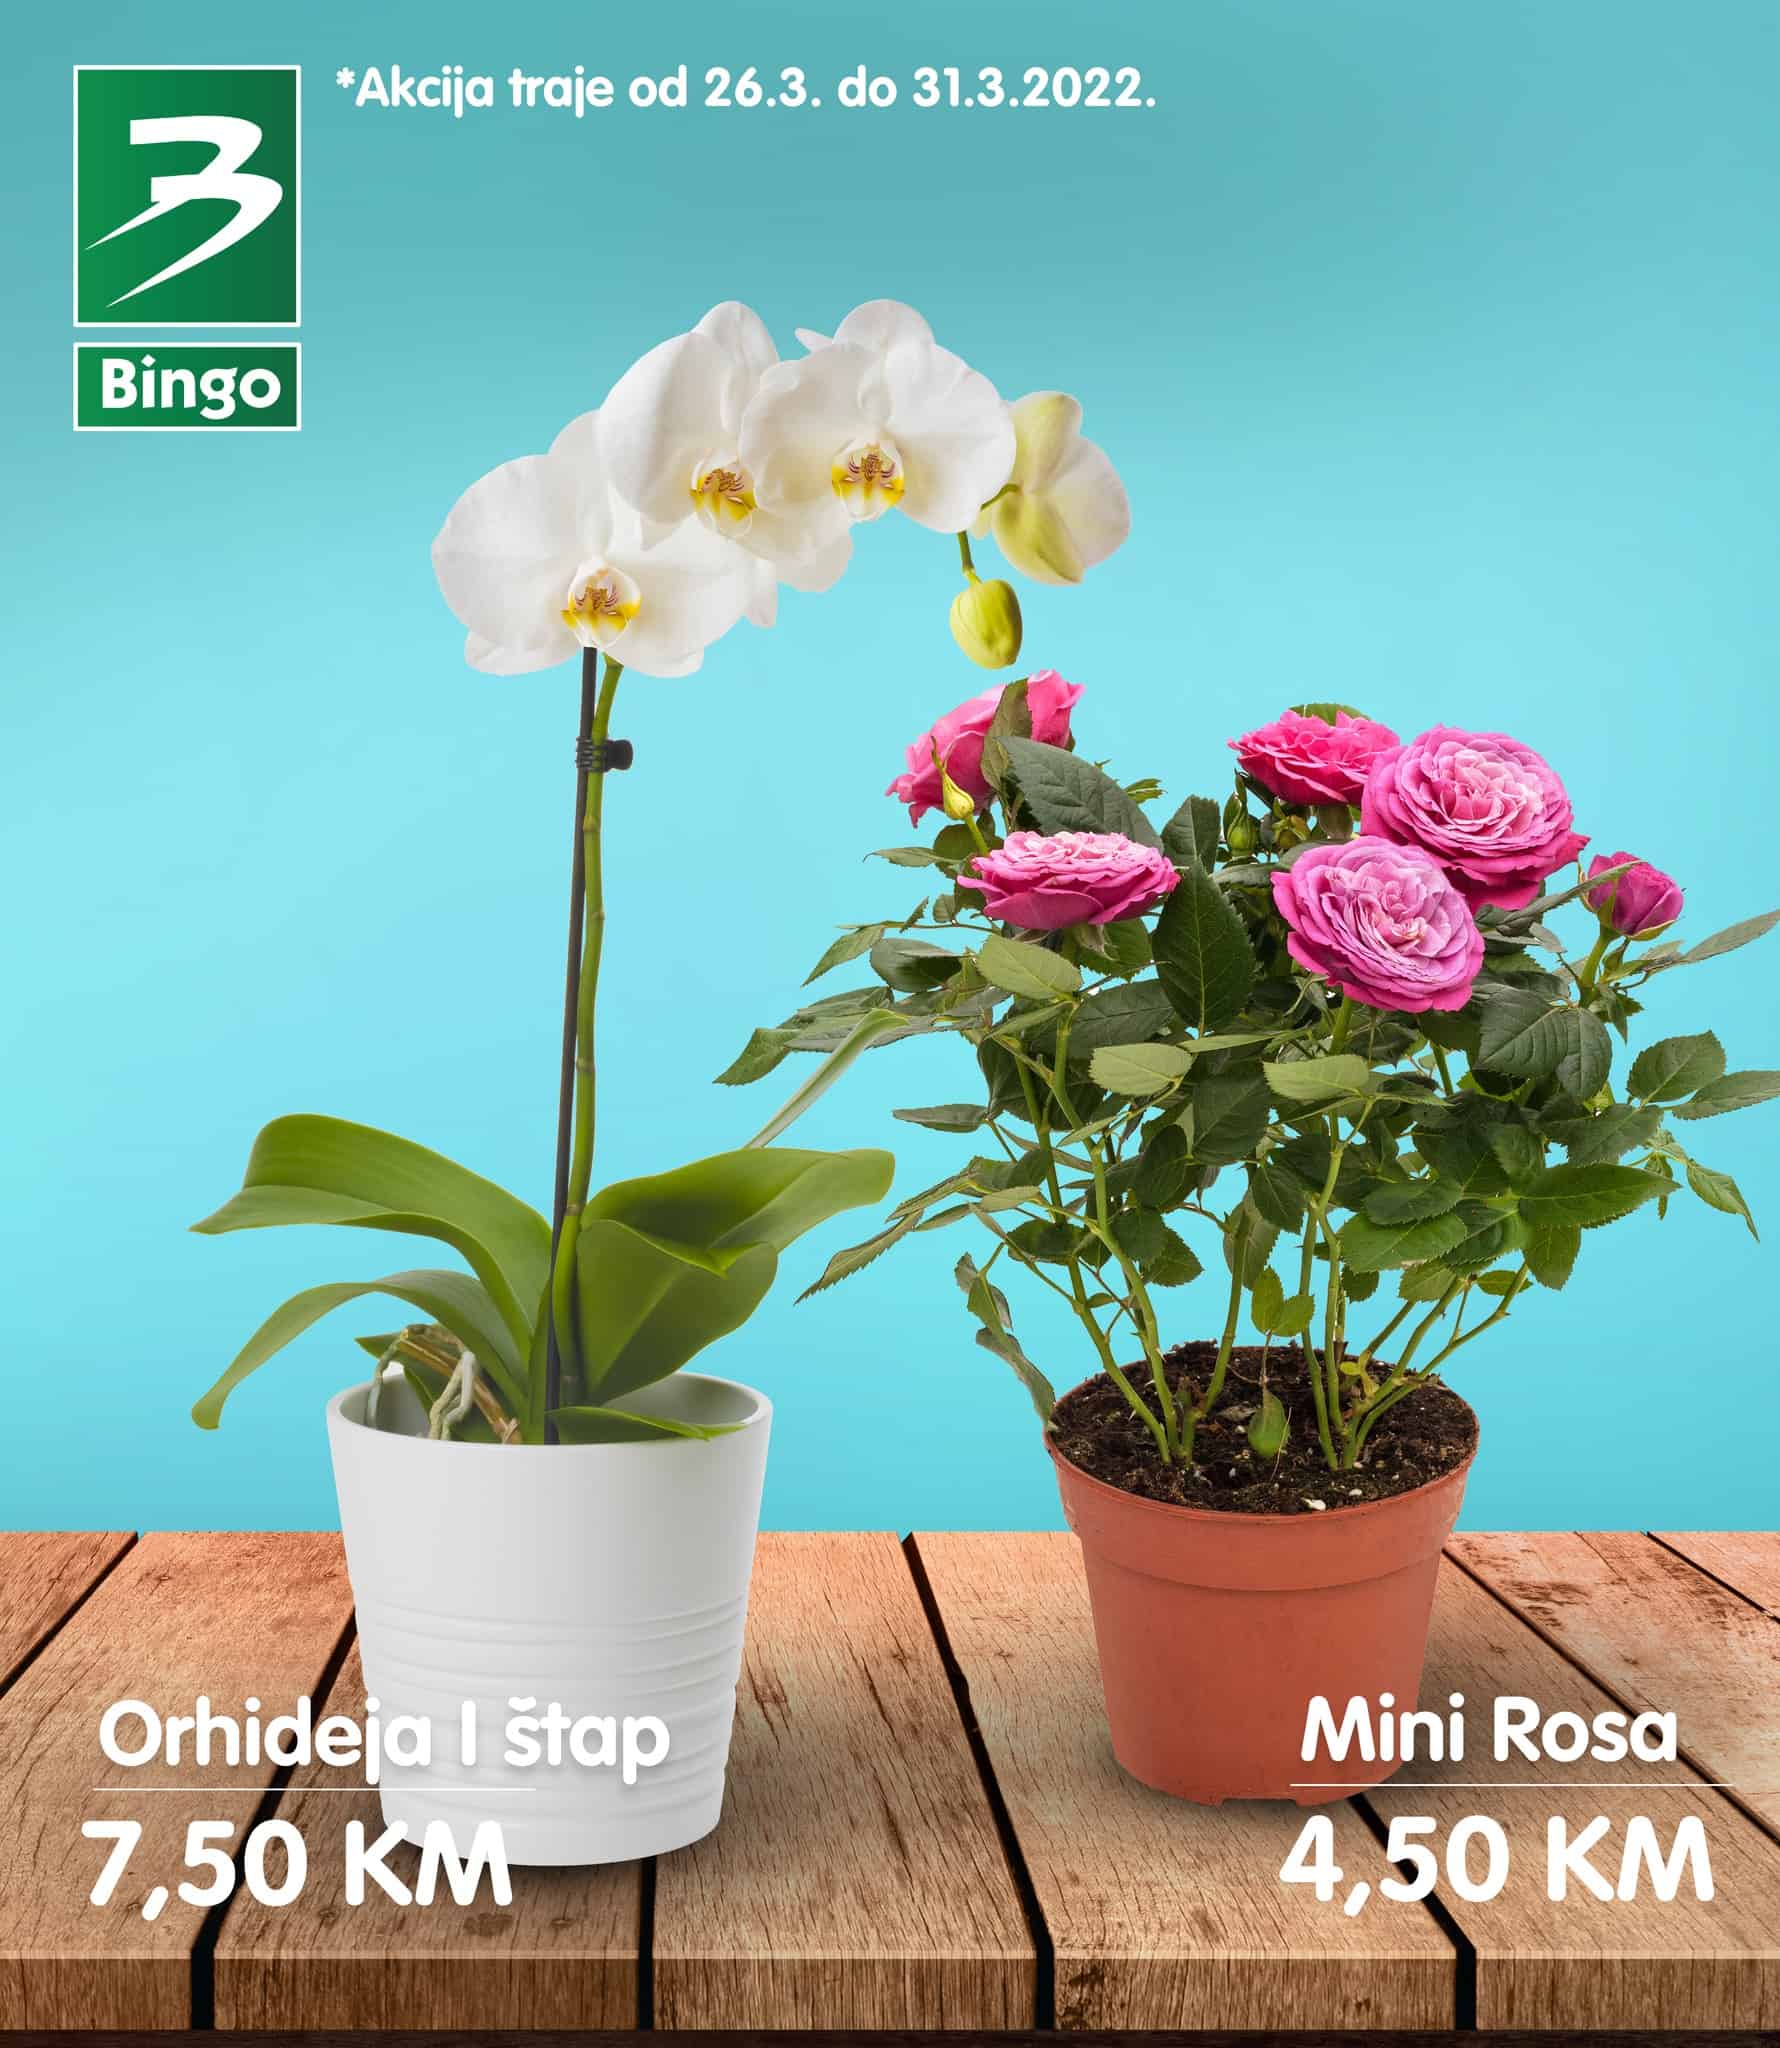 Orhideje samo 7,50 KM Mini Rosa samo 4,50 KM! Bingo super akcija!